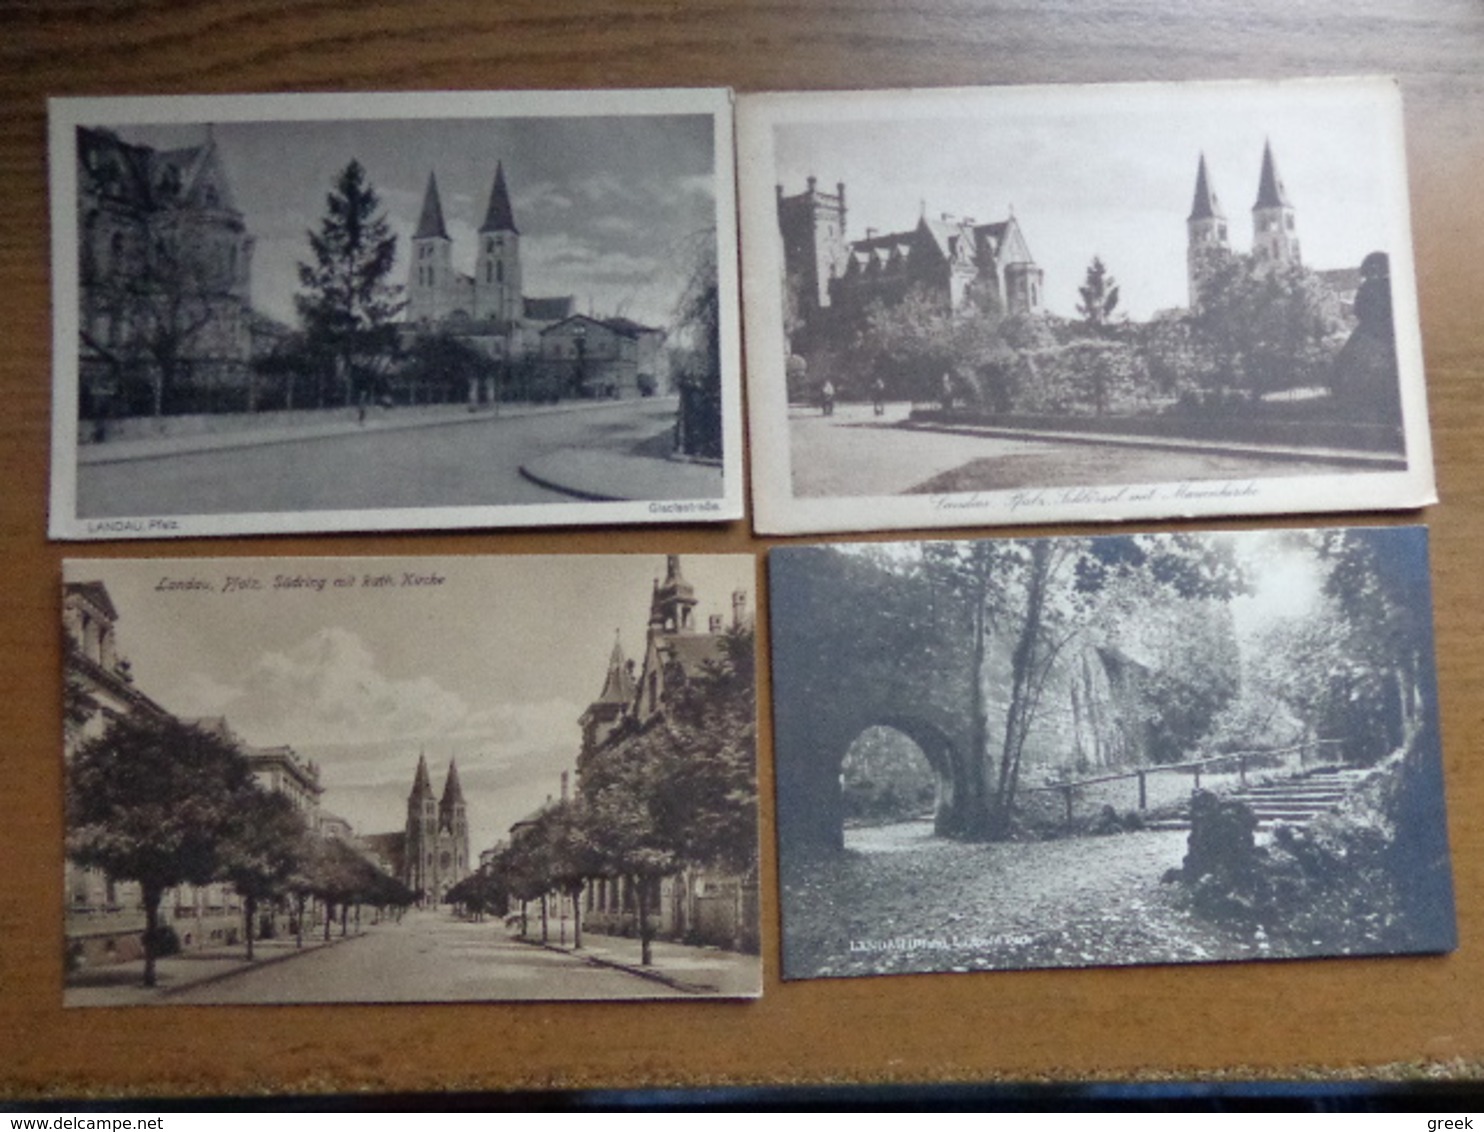 Doos postkaarten (3kg900) Allerlei landen en thema's (gekleurd als zwart wit) zie enkele foto's